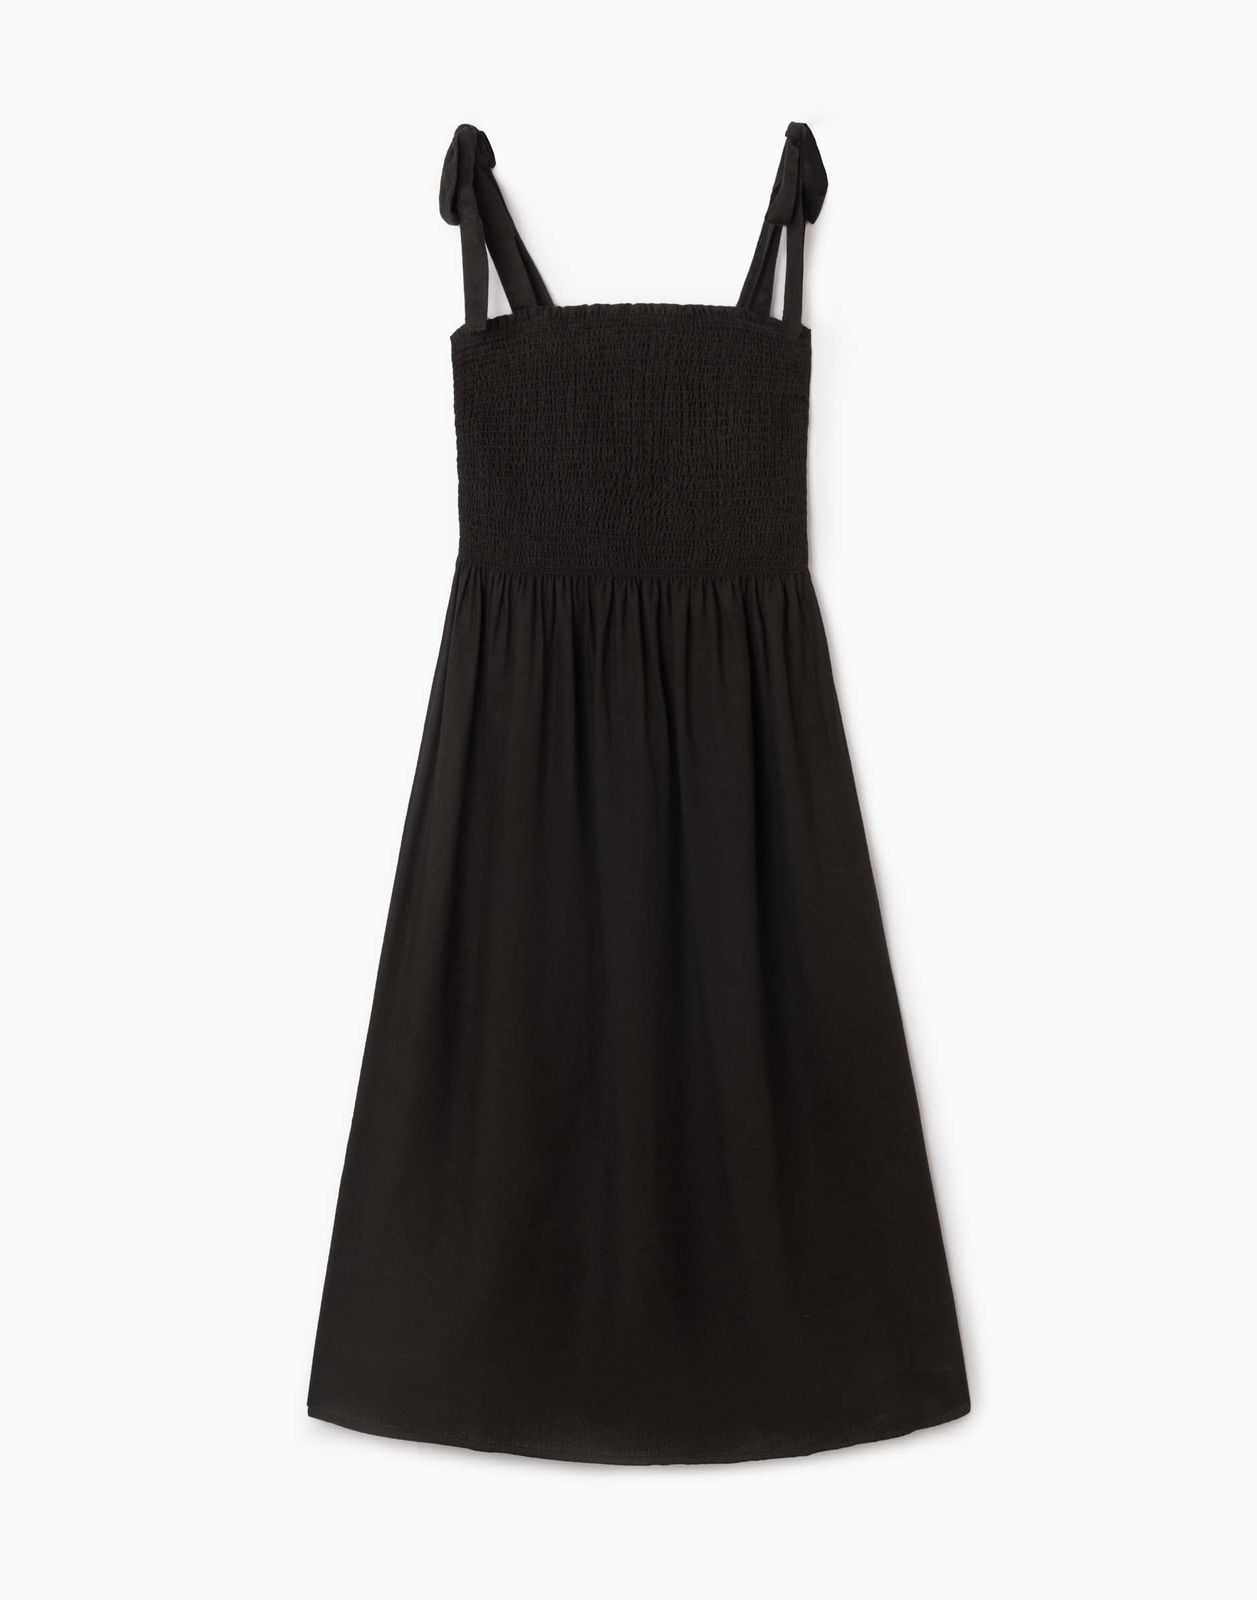 Платье женское Gloria Jeans GDR028414 черный XL/170